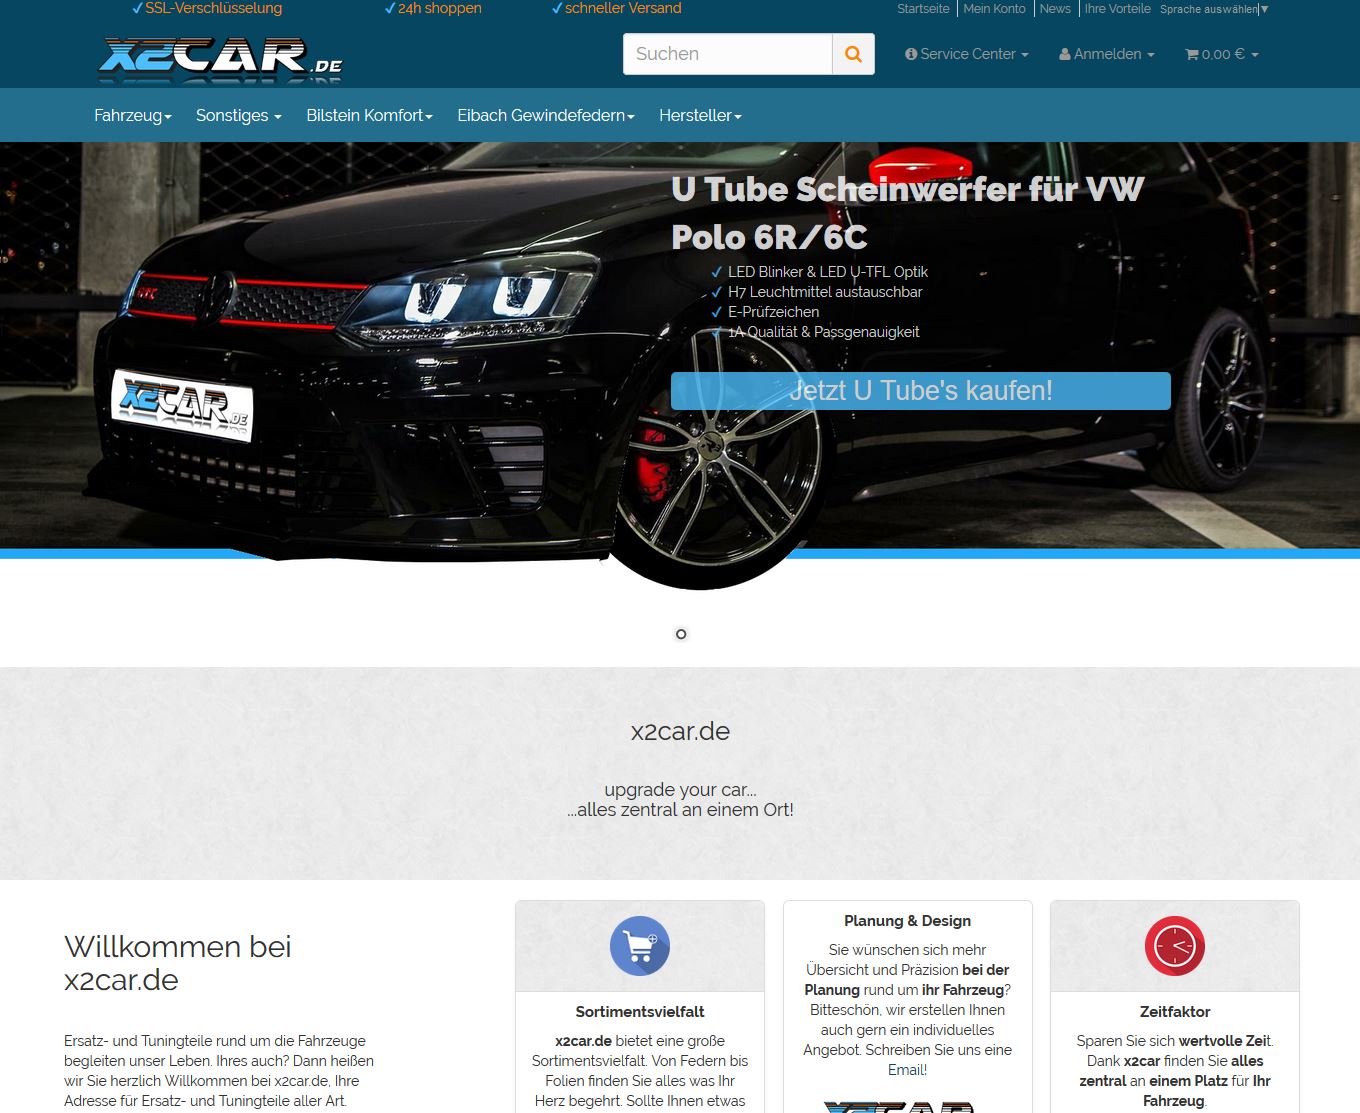 x2car.de OnlineShop in einer neuen Version online!  - 